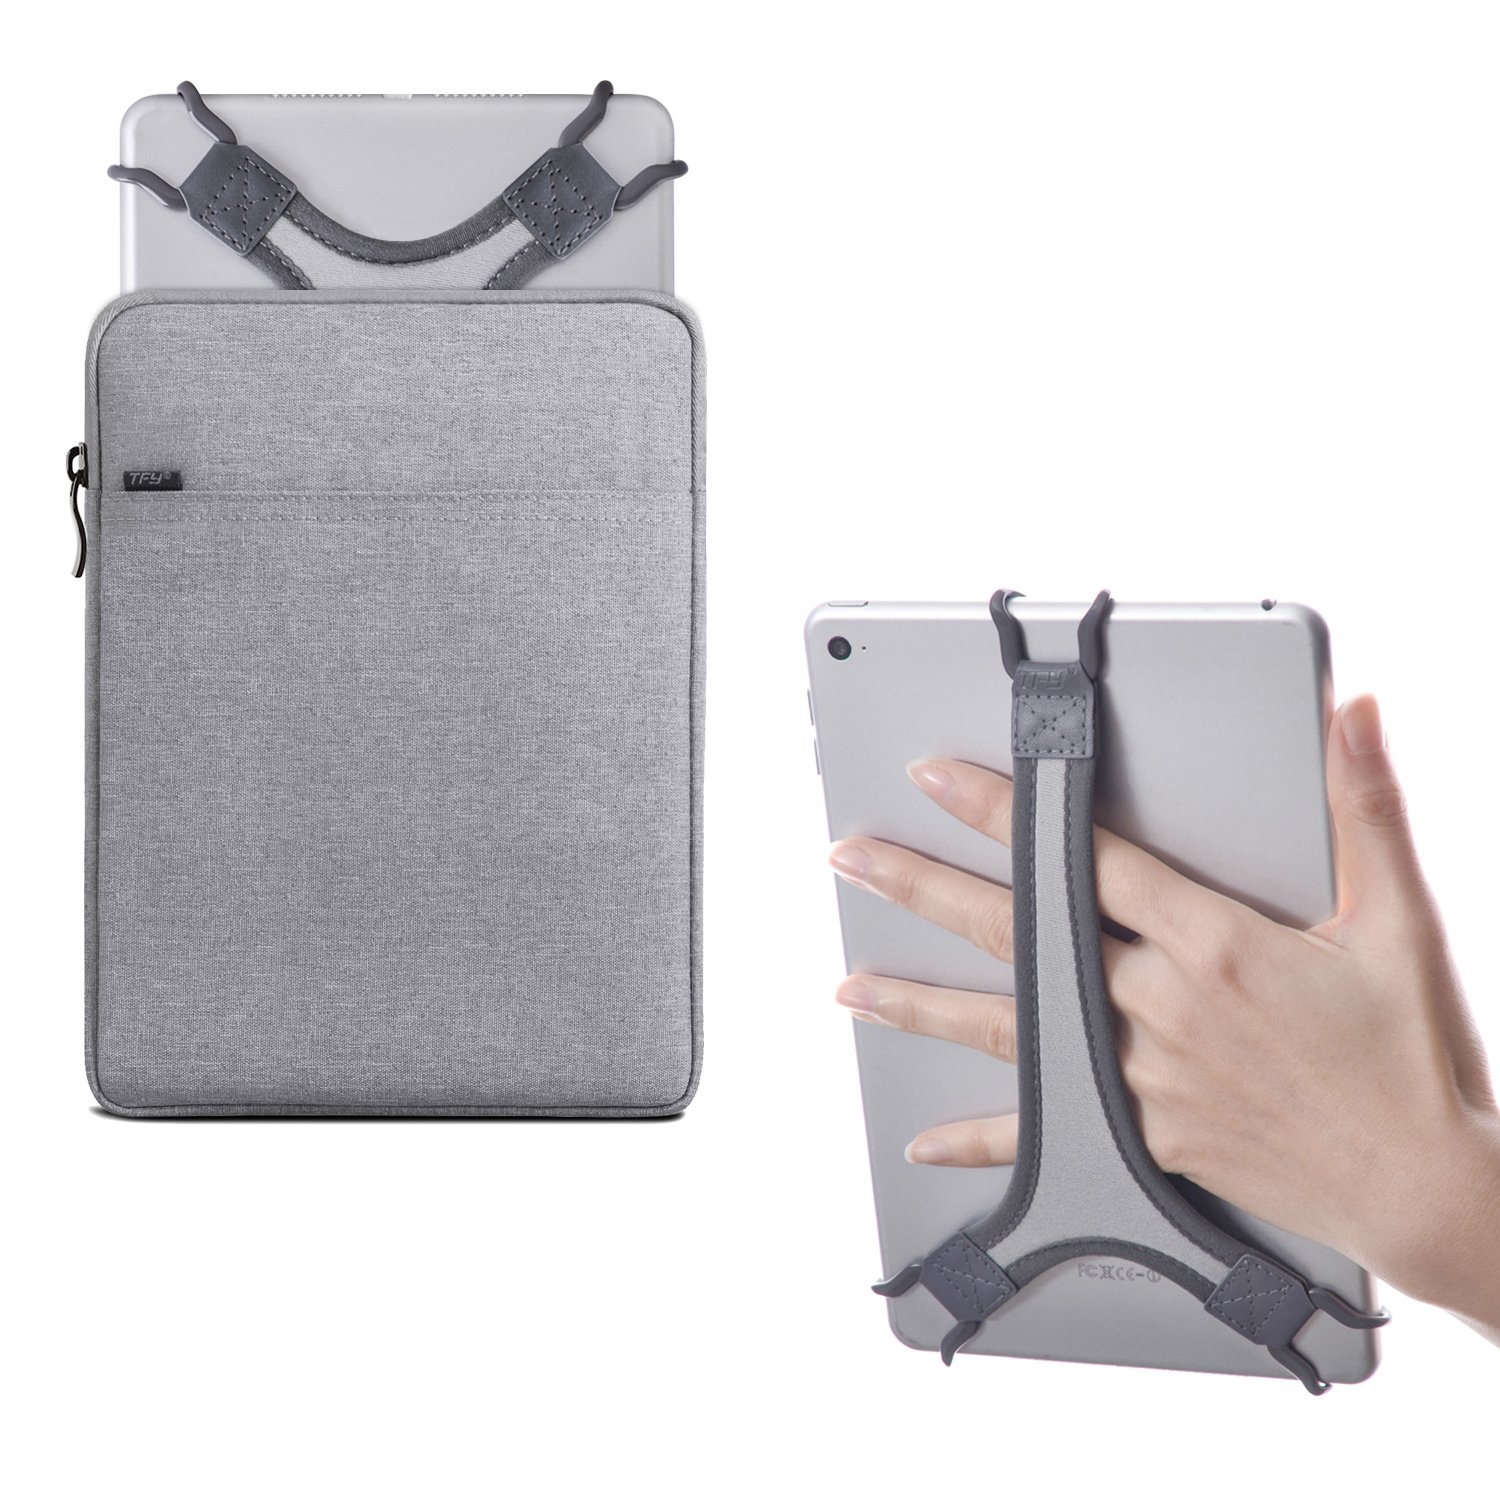 TFY Schutztasche Hülle mit Reißverschluss (Grau), Plus Bonus Handschlaufe Halterung (Weiß) für 7-8 Zoll iPad und Andere Tablets